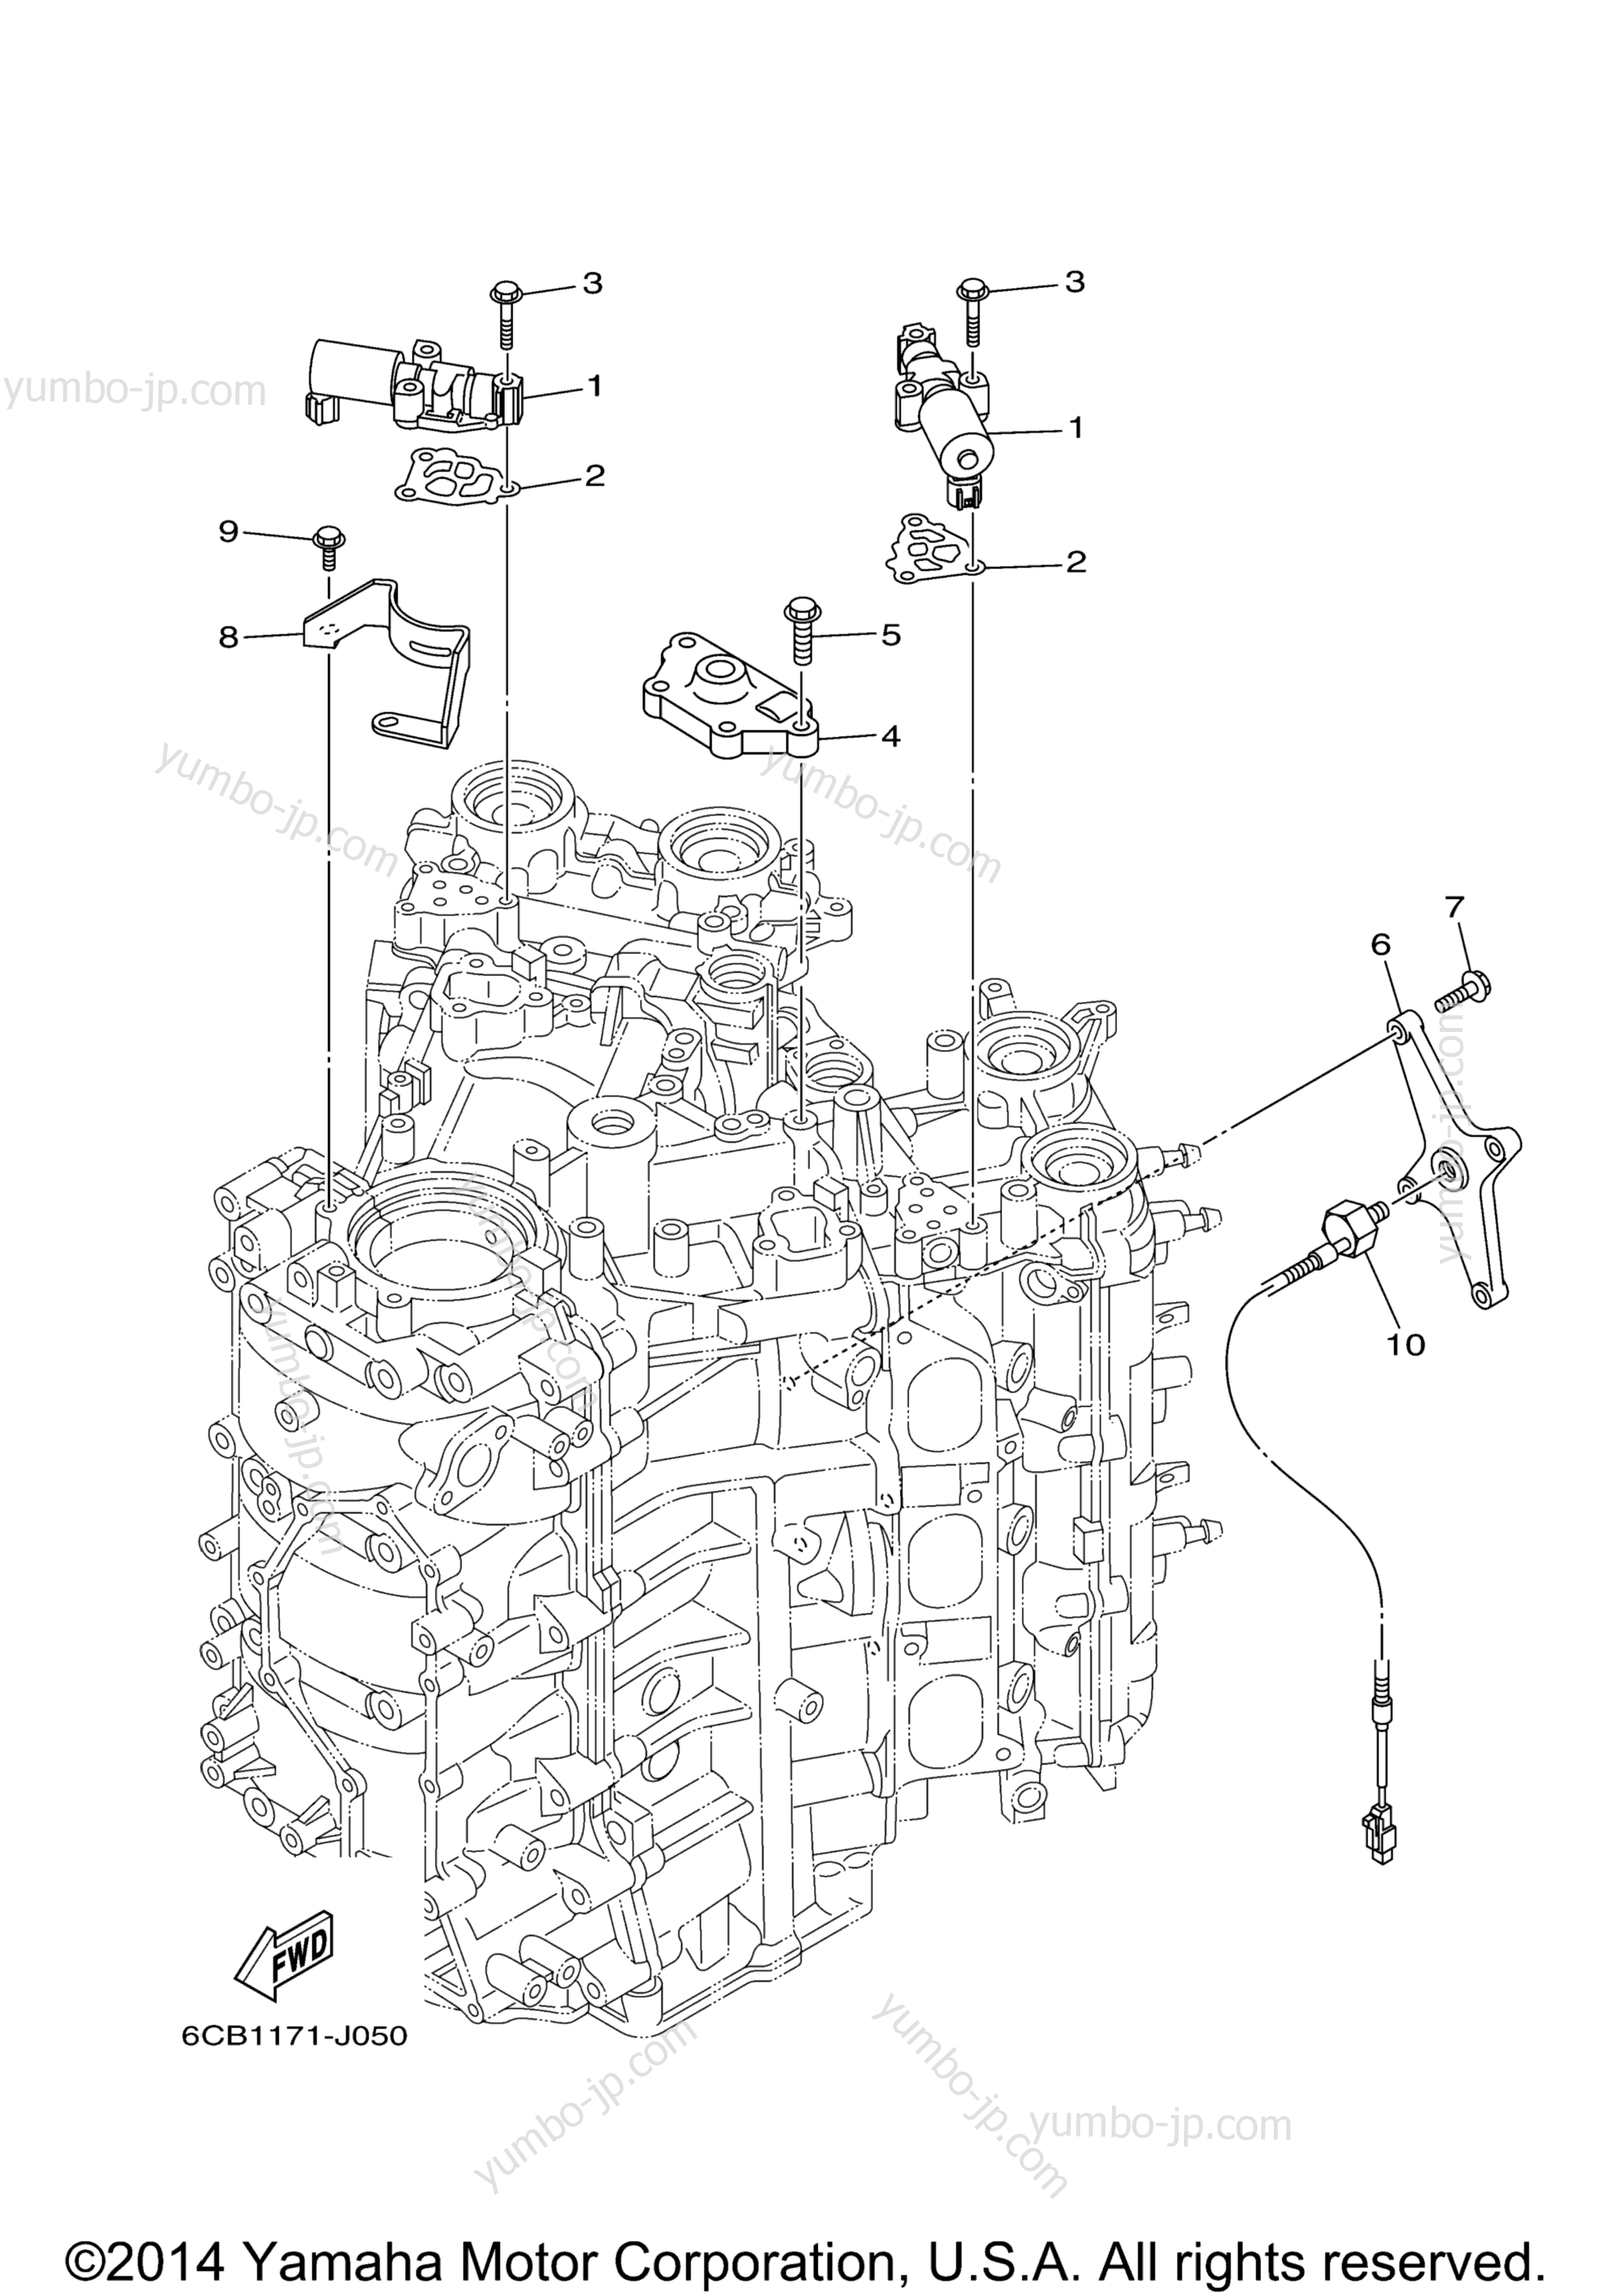 Cylinder Crankcase 3 для лодочных моторов YAMAHA F300UCA_01 (0112) 2006 г.